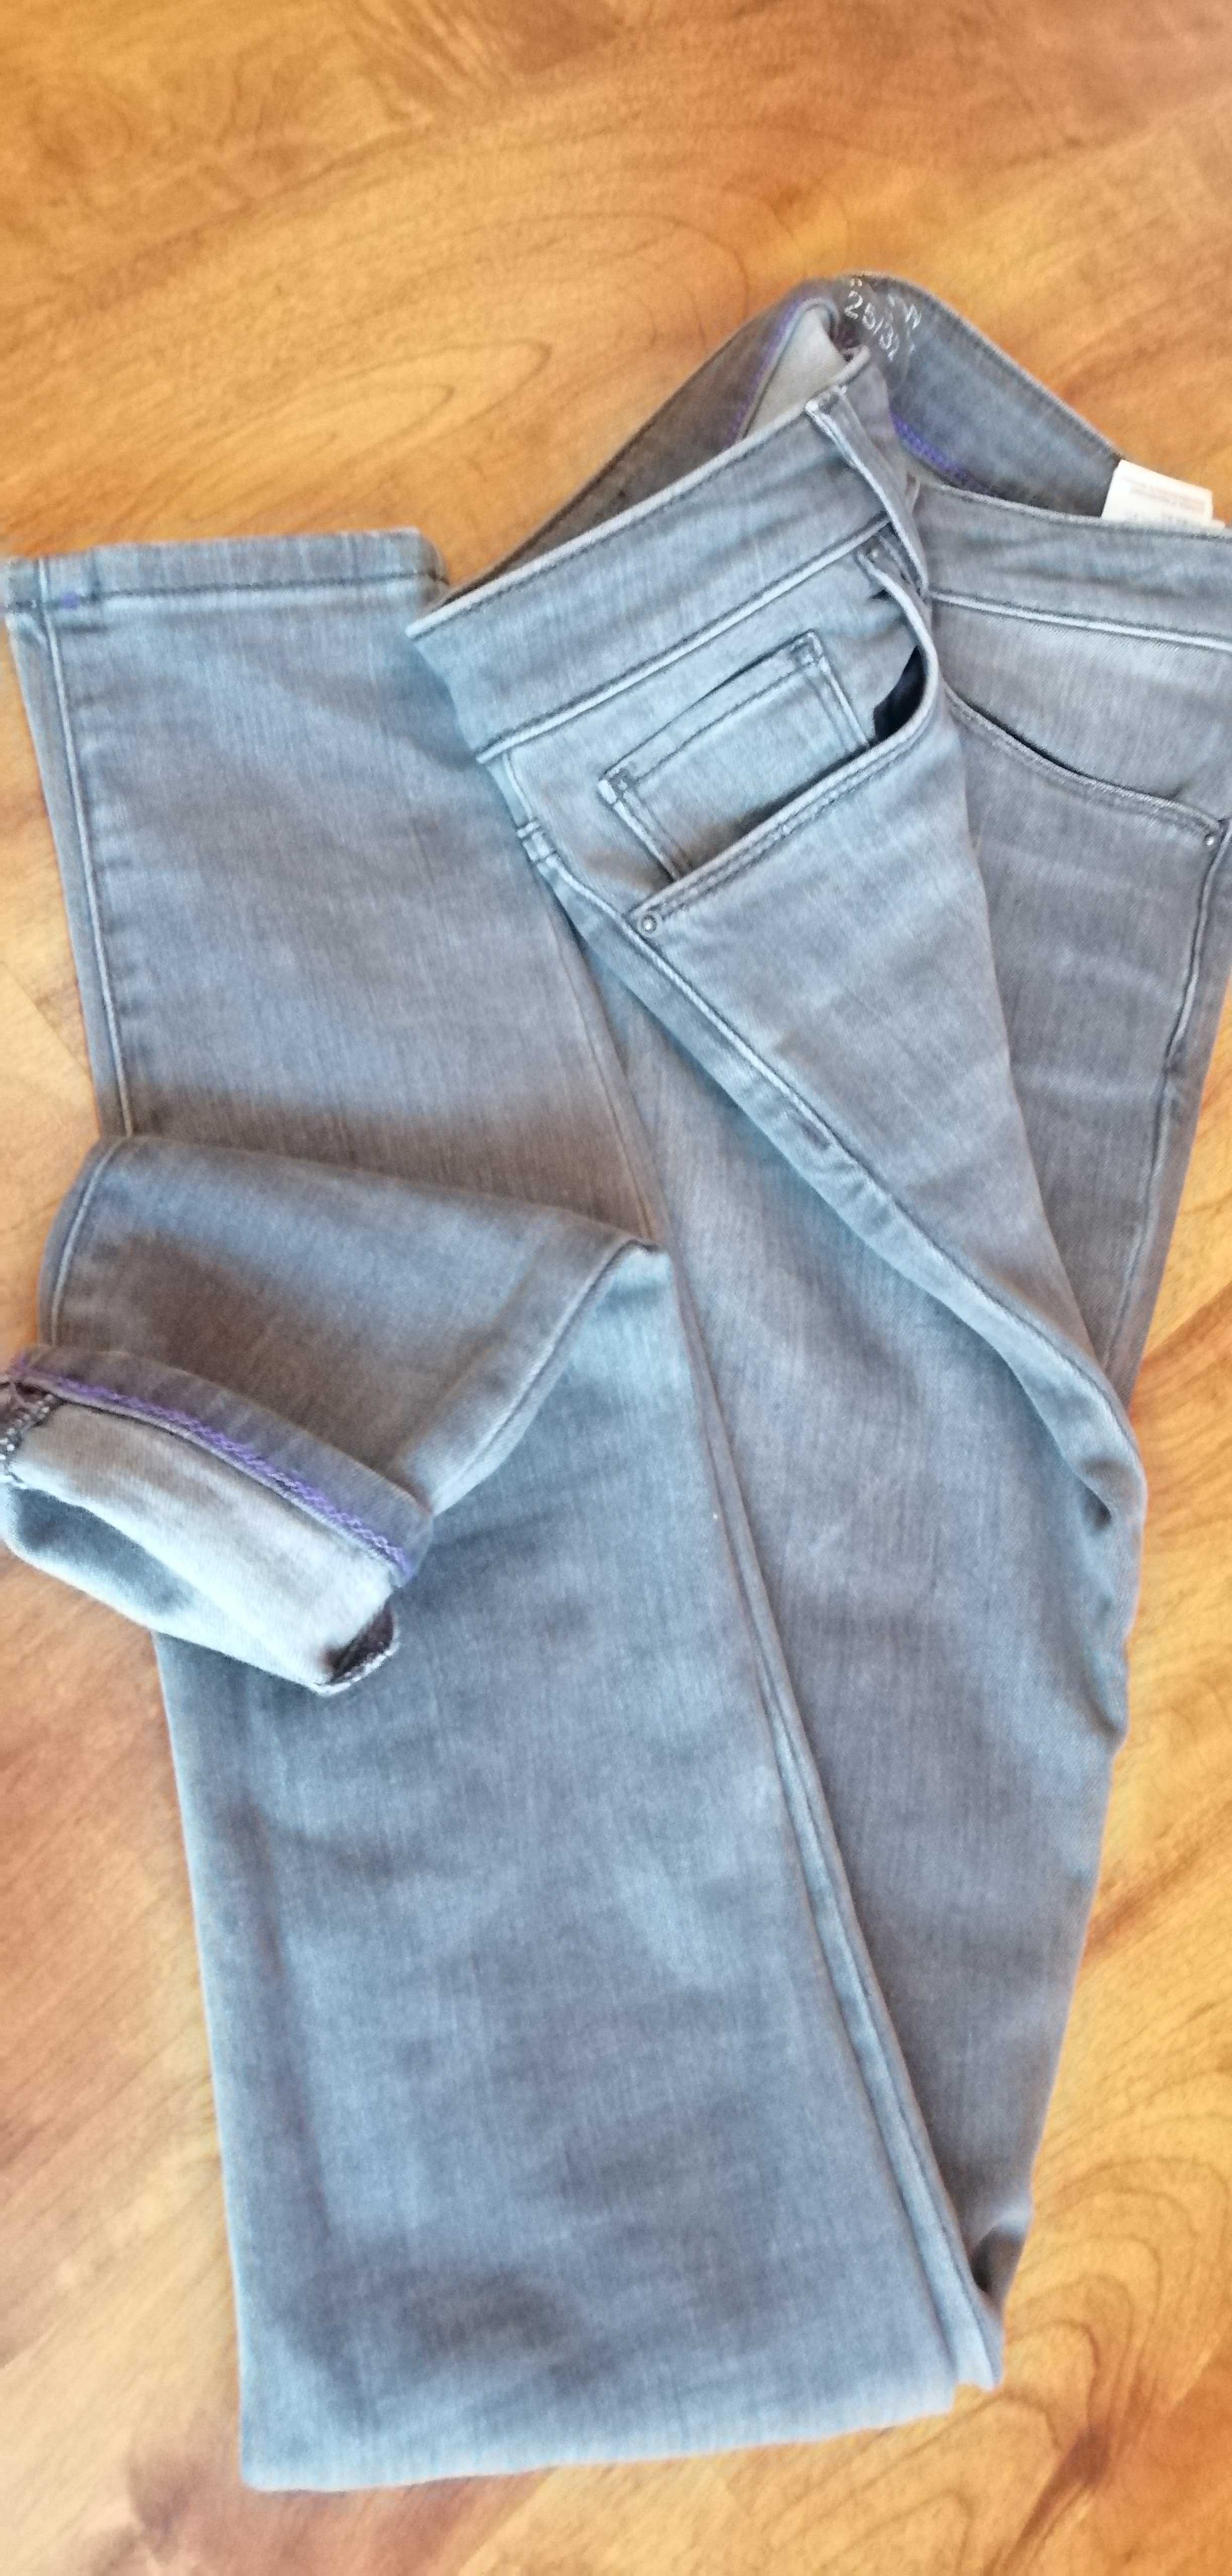 Spodnie  jeans - jegging fit - rurki - Tommy Hilfiger. Możliwa zamiana